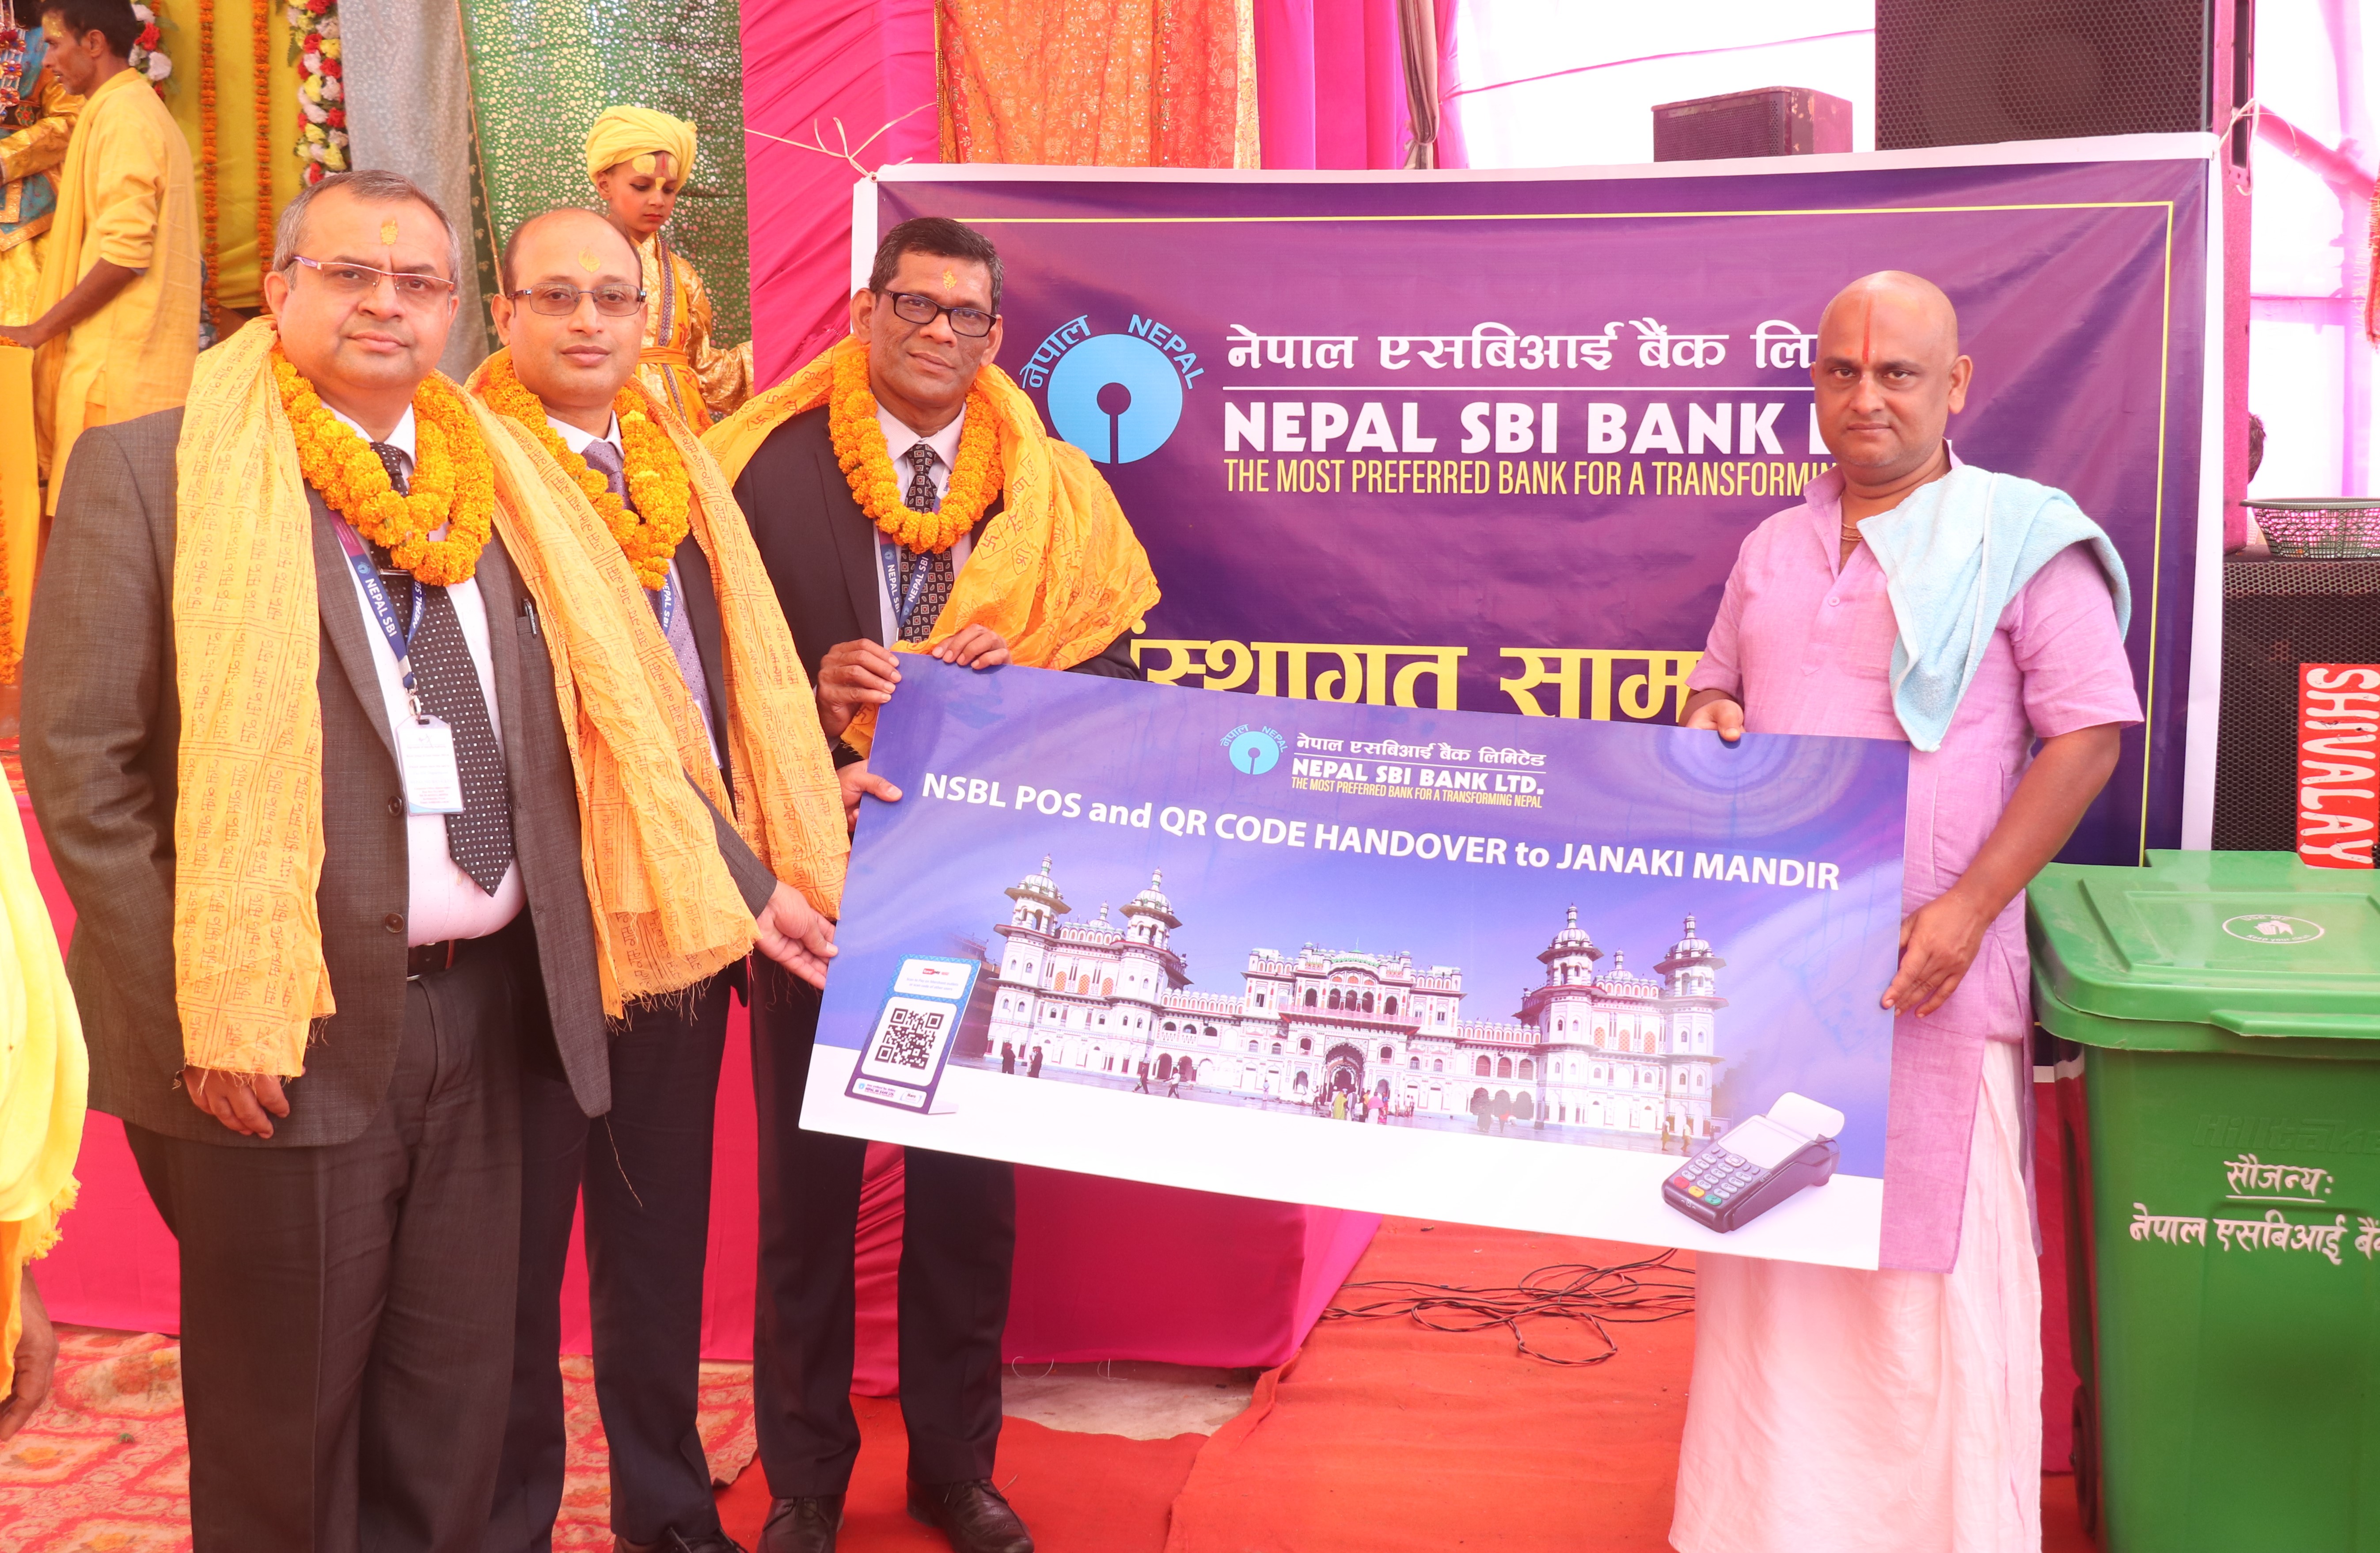 नेपाल एसबिआई बैंकद्धारा जनकी मन्दिरमा क्यूआर कोड र पीओएस मेसिन हस्तान्तरण